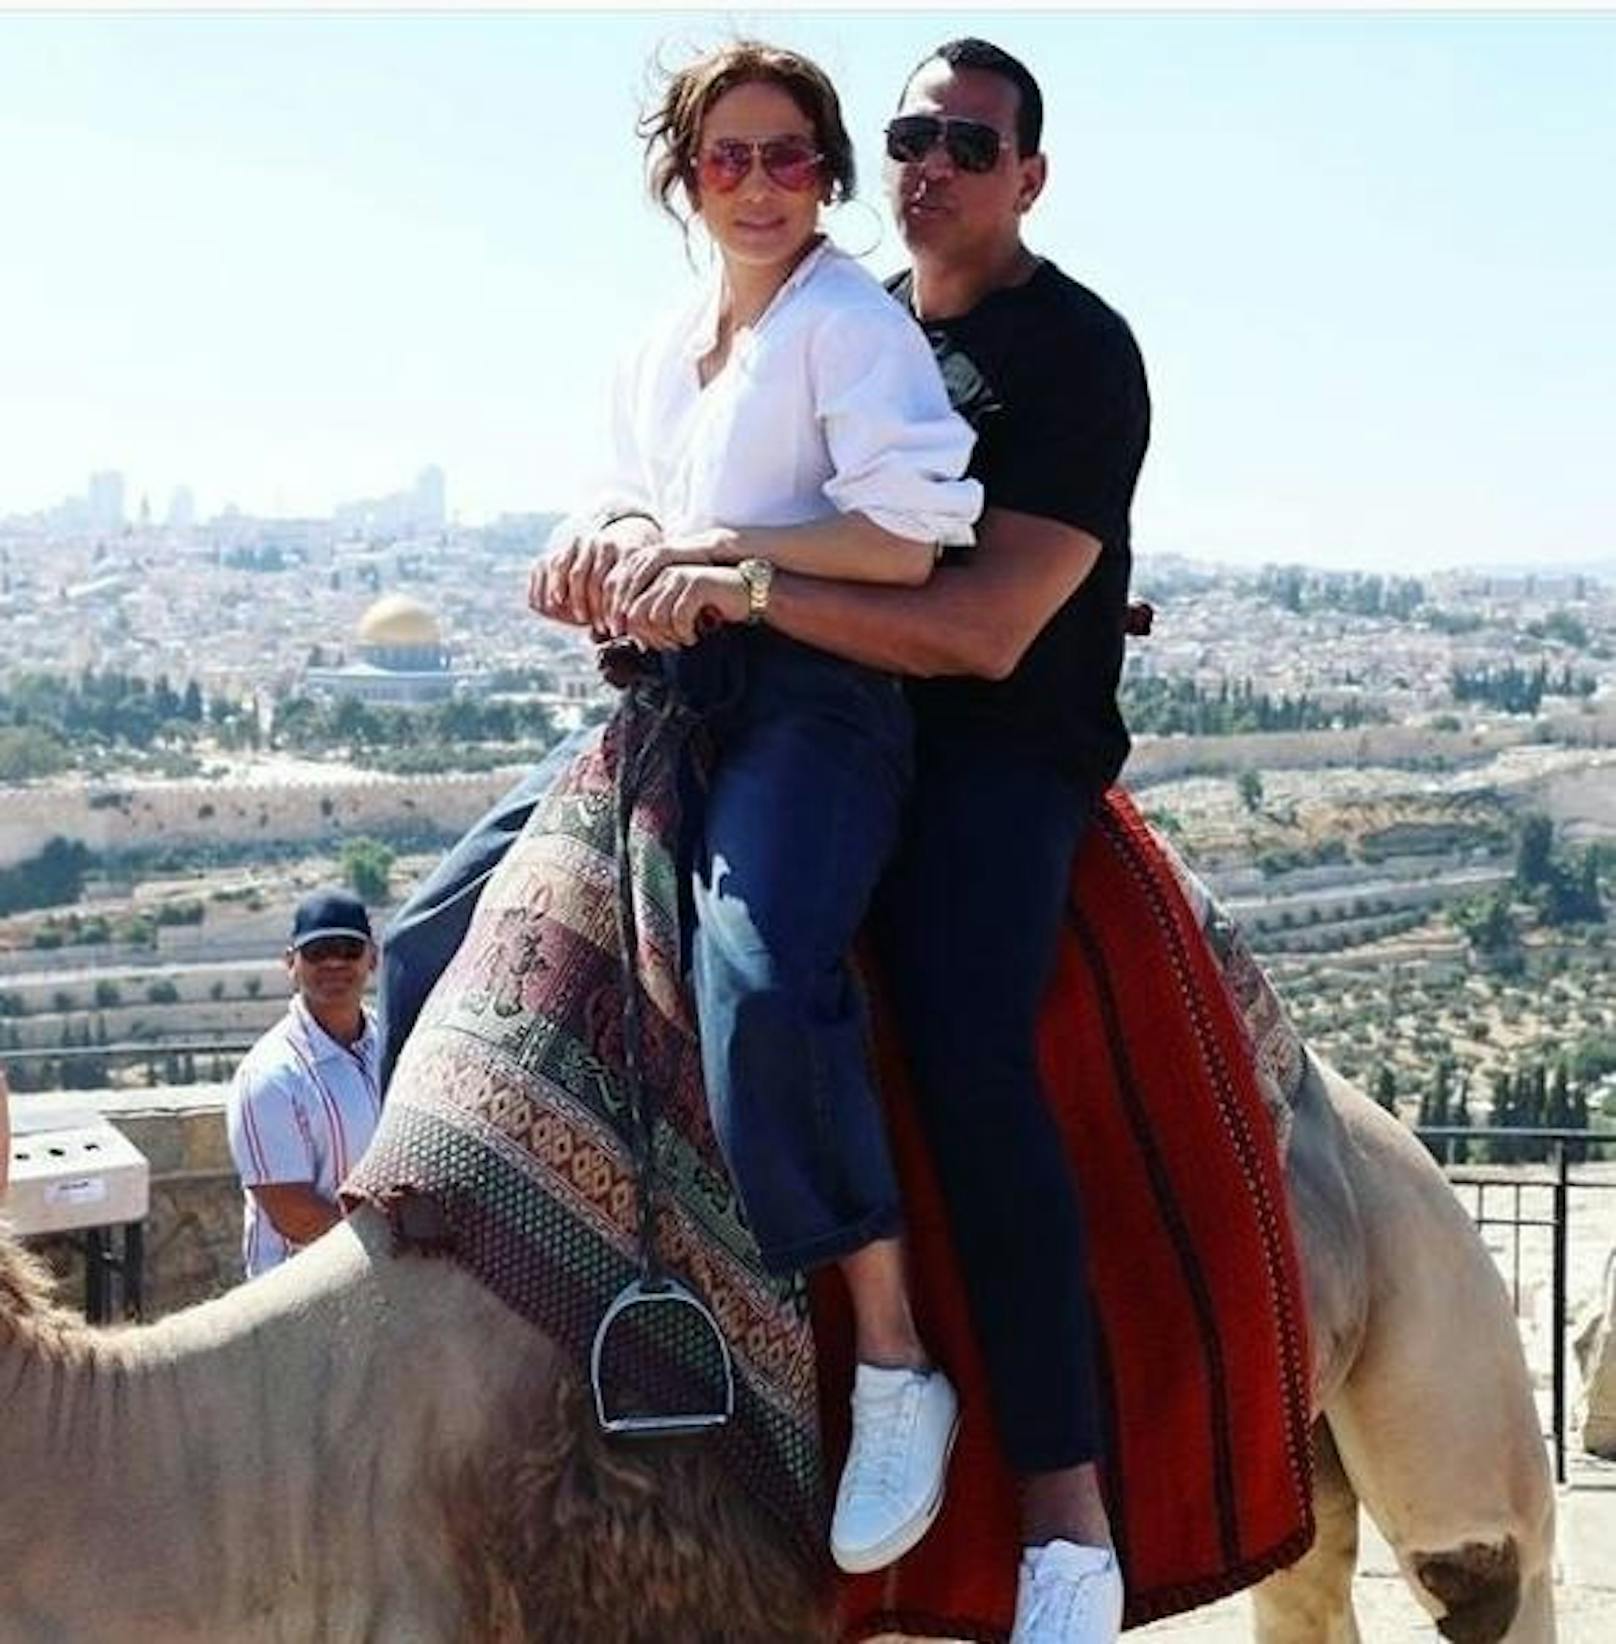 03.08.2019: Urlaubsgrüße aus Israel sendet Jennifer Lopez ihren Fans auf Instagram. Gemeinsam mit ihrem Verlobten A-Rod und den Kindern weilt die 50-Jährige momentan im Nahen Osten. Der obligatorische Touristen-Ritt auf einem Kamel musste sein. 